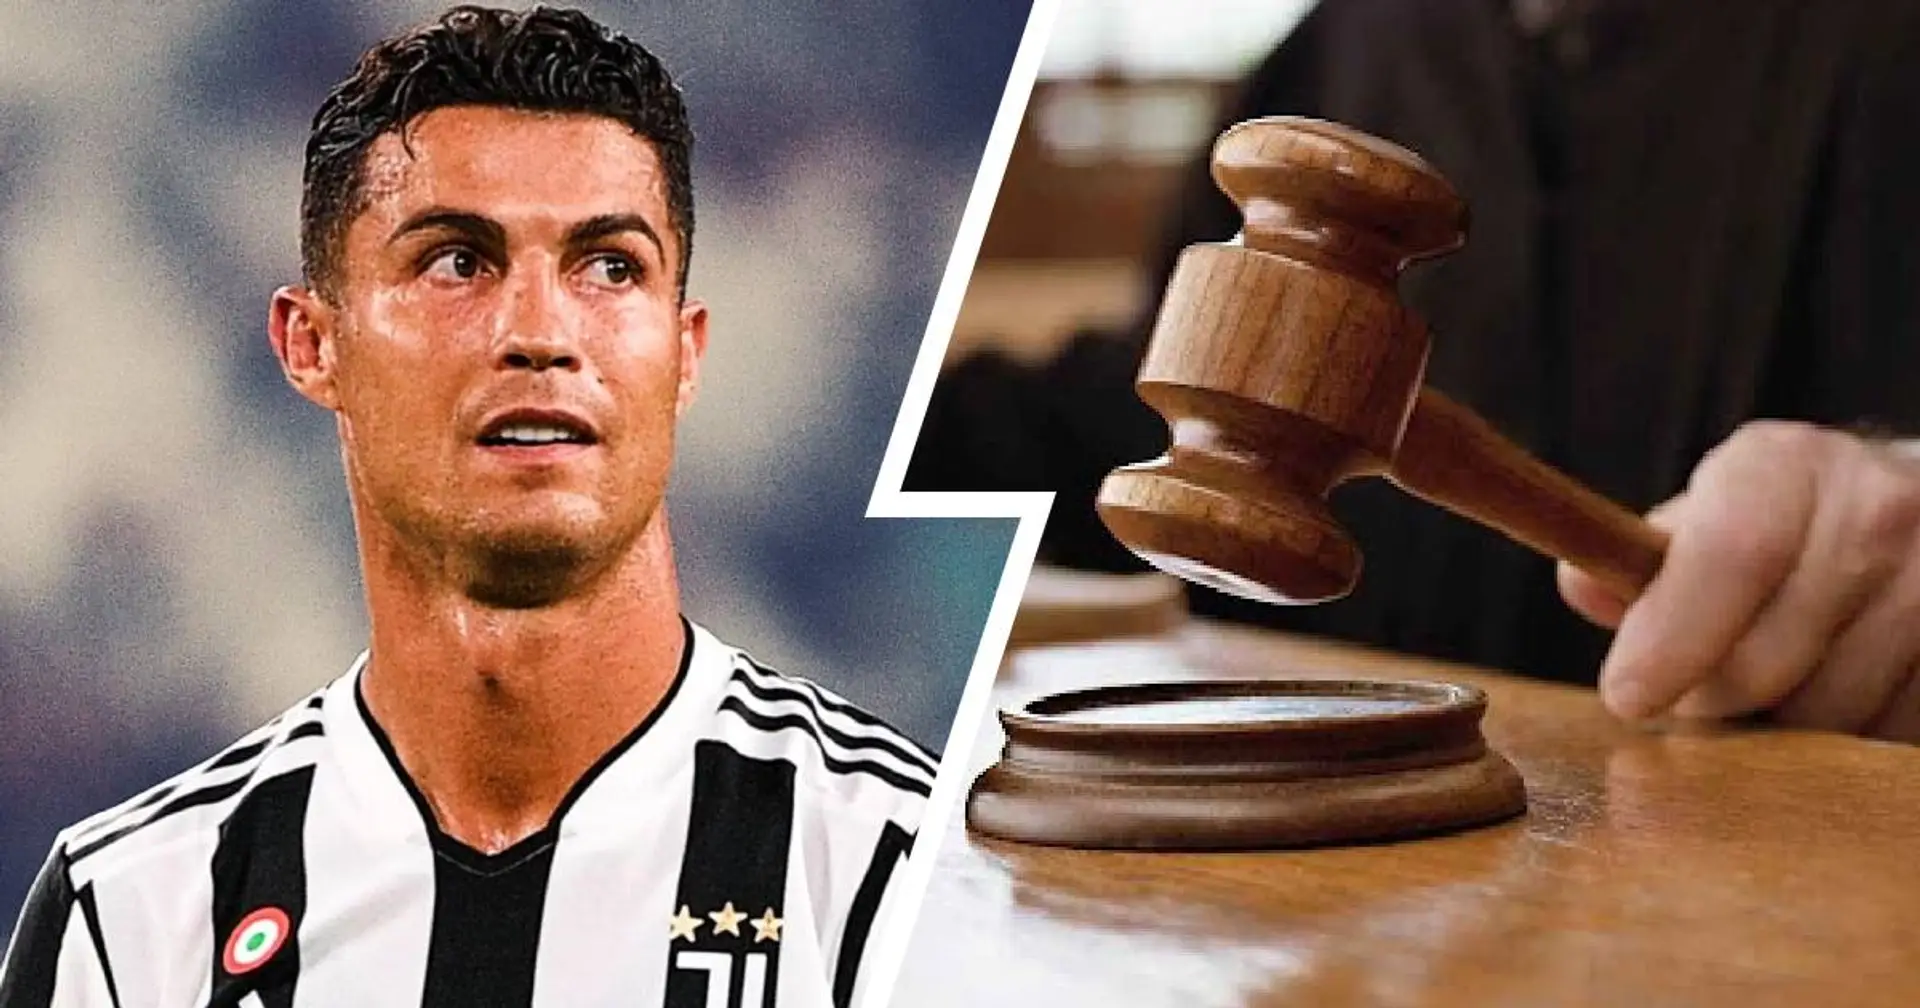 La decisione sul caso Ronaldo e altre 2 storie sulla Juve che potresti esserti perso